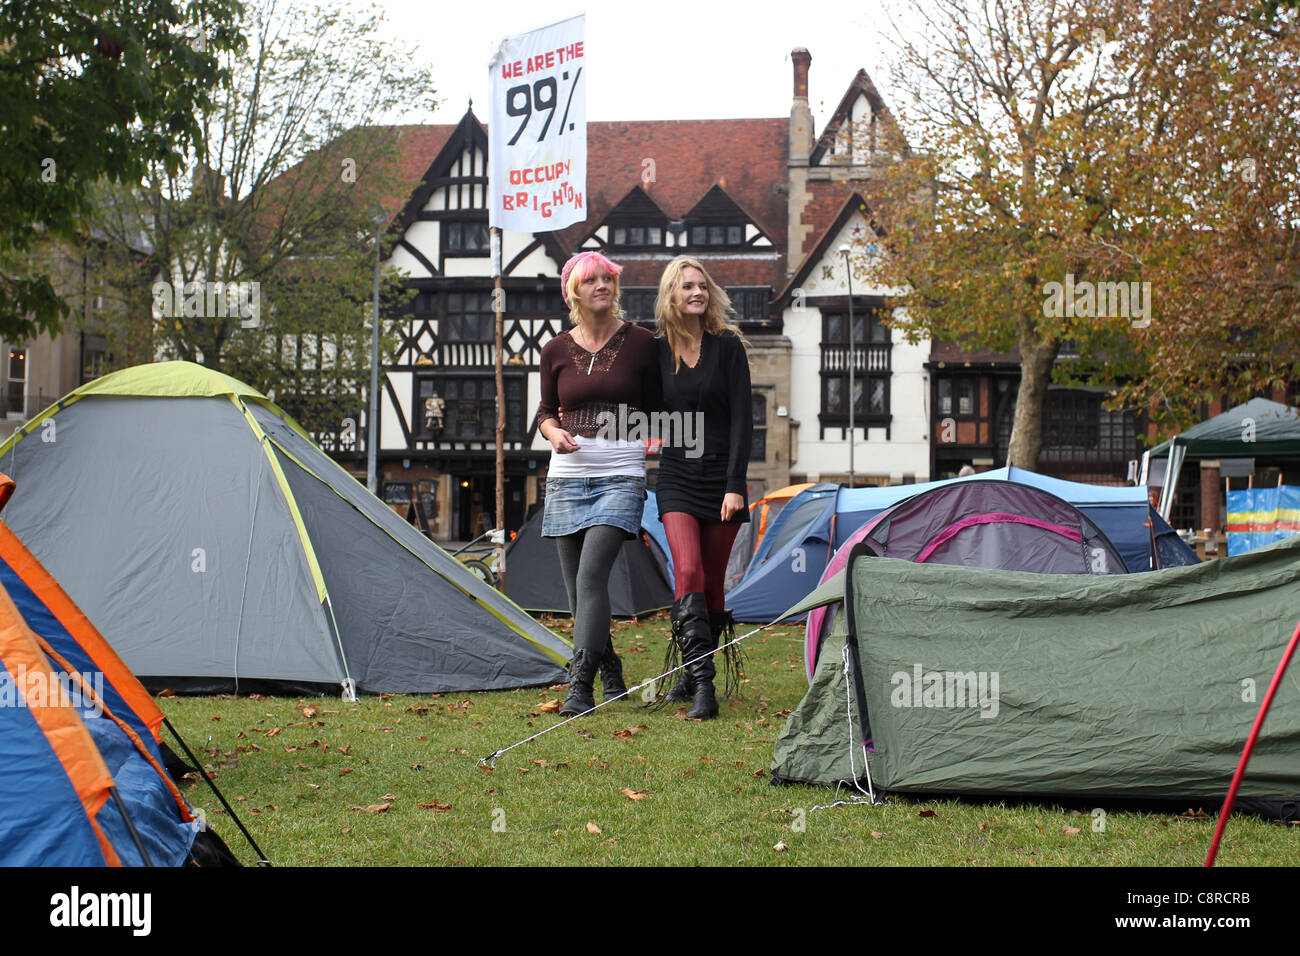 Un petit groupe de personnes ont commencé une campagne de Brighton occupent, mise en place des tentes dans les jardins Victoria de la ville dans un style similaire à la récente occupation de la Cathédrale St Paul à Londres. Sur la photo, les protestataires à Brighton, East Sussex, UK. Banque D'Images